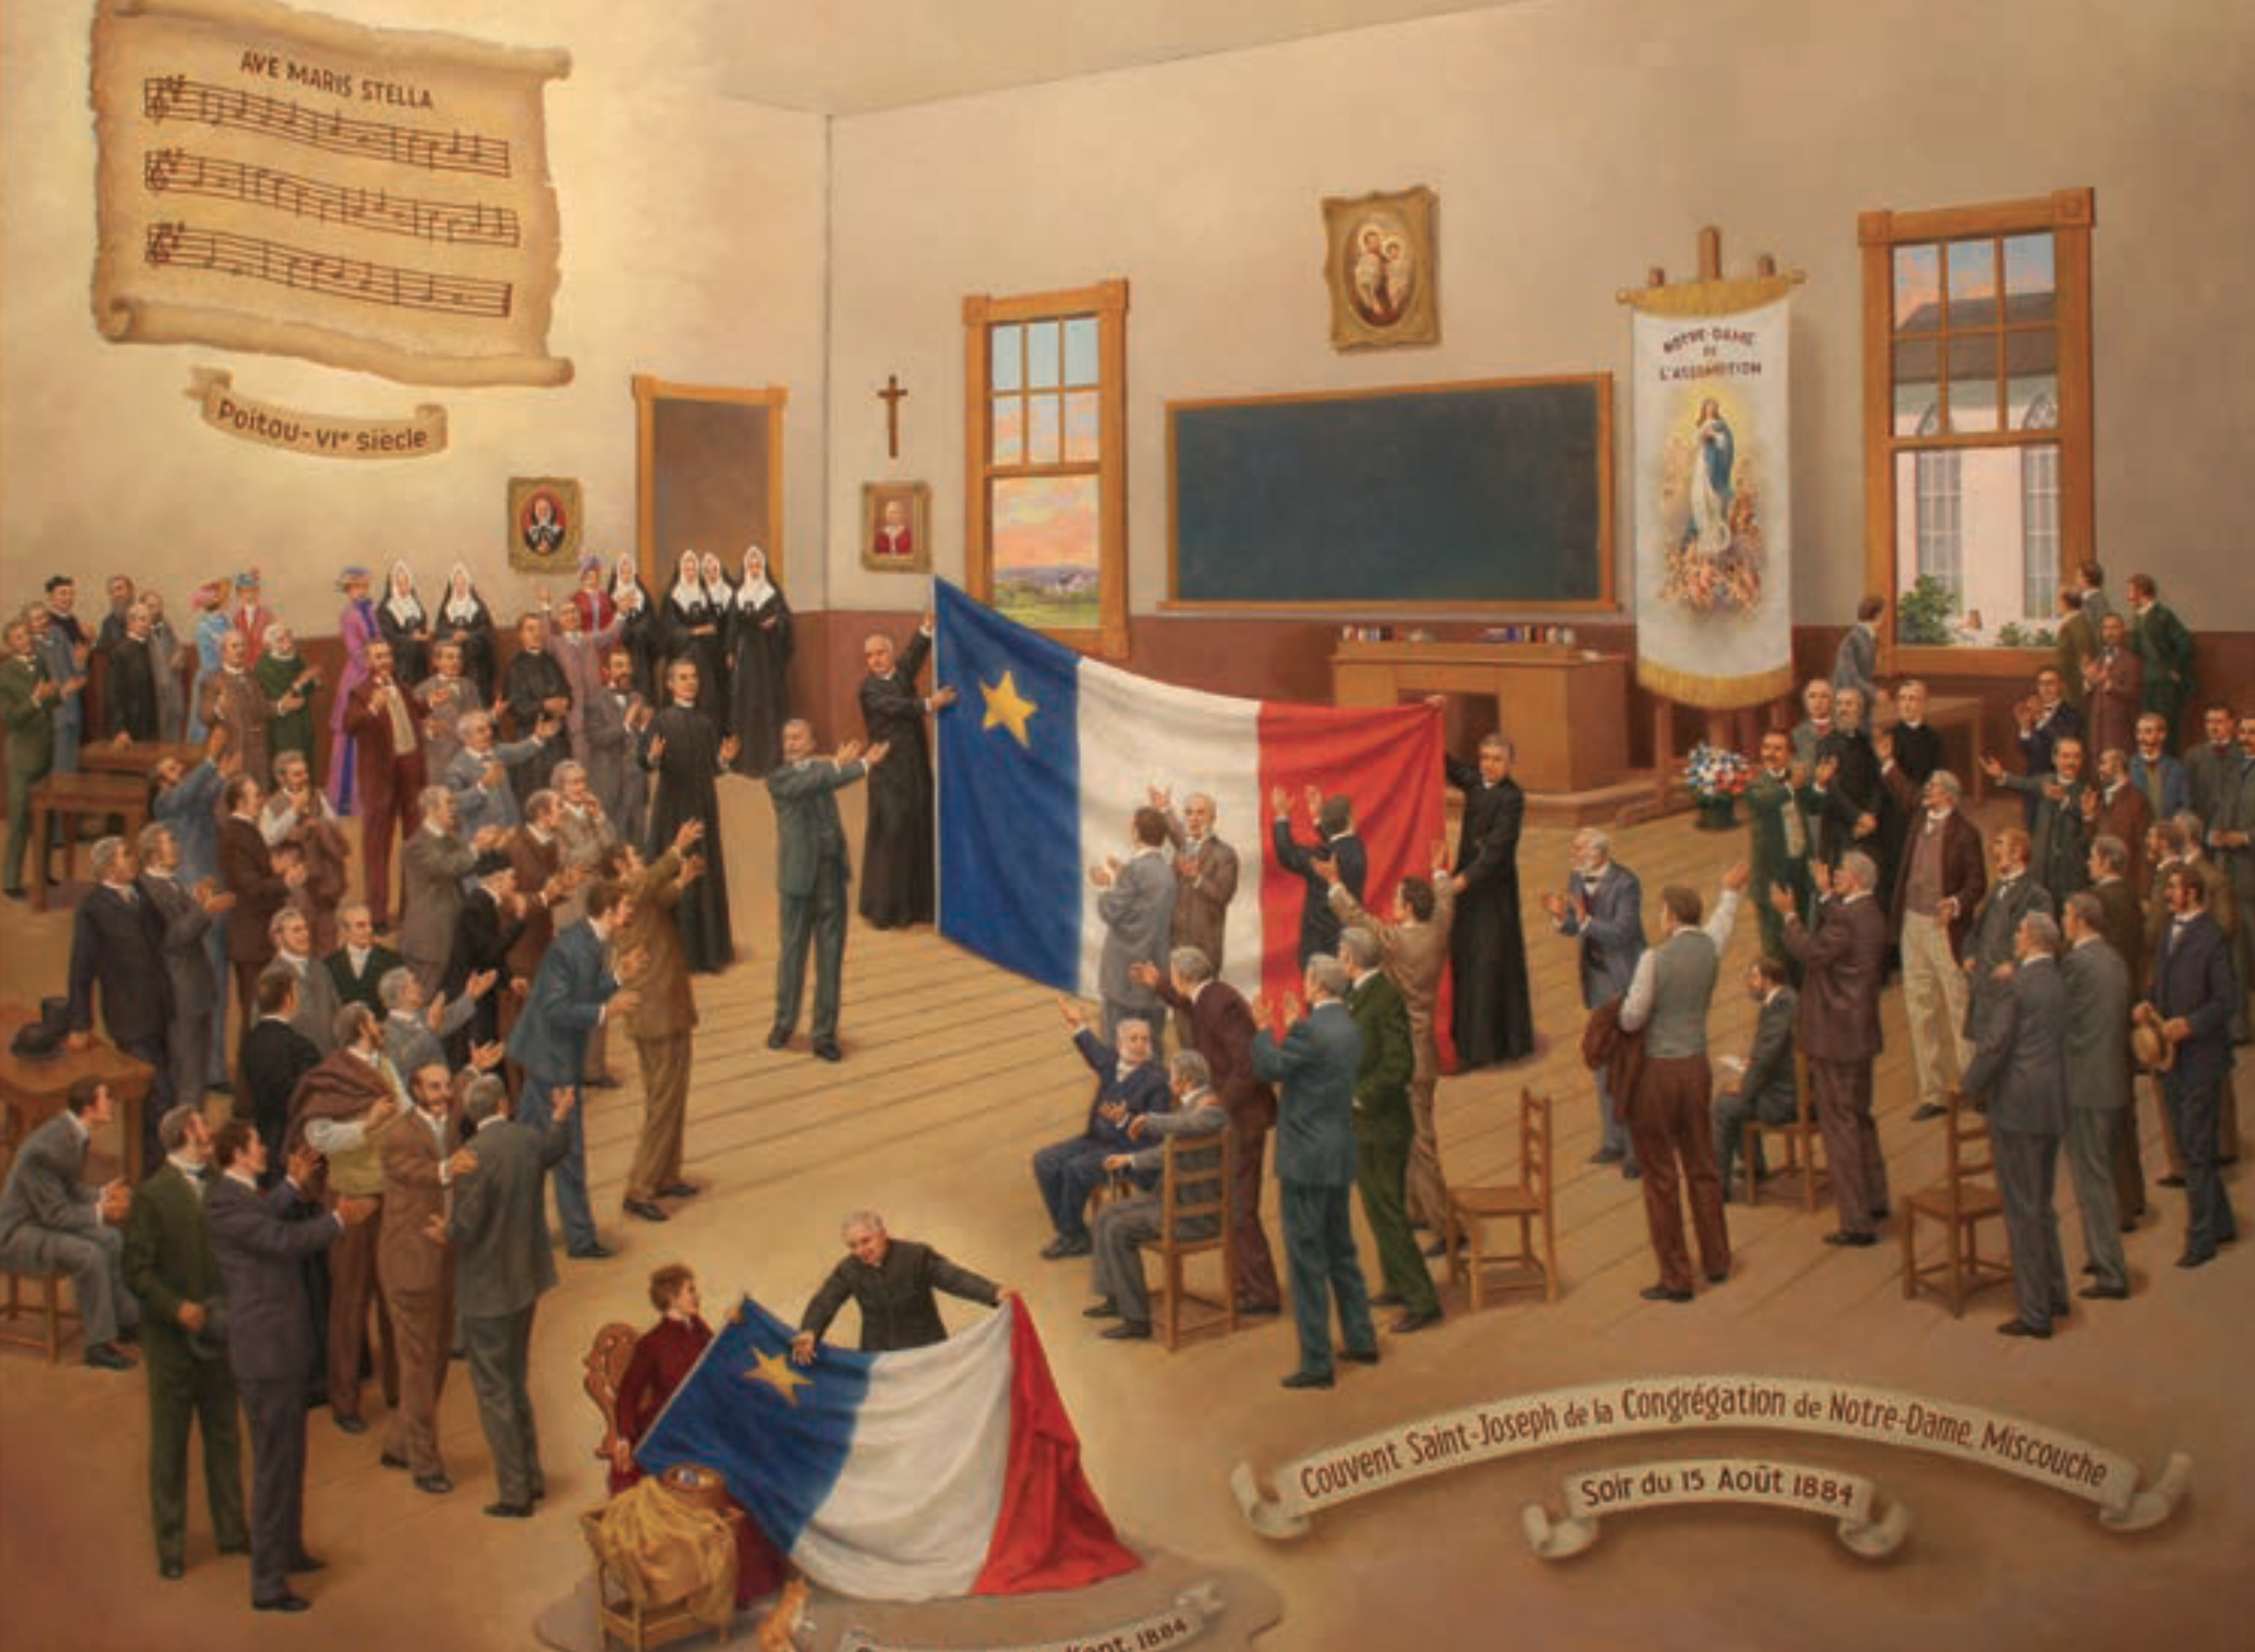 Éphémérides : 15 août 1884 : Le dévoilement du premier drapeau acadien